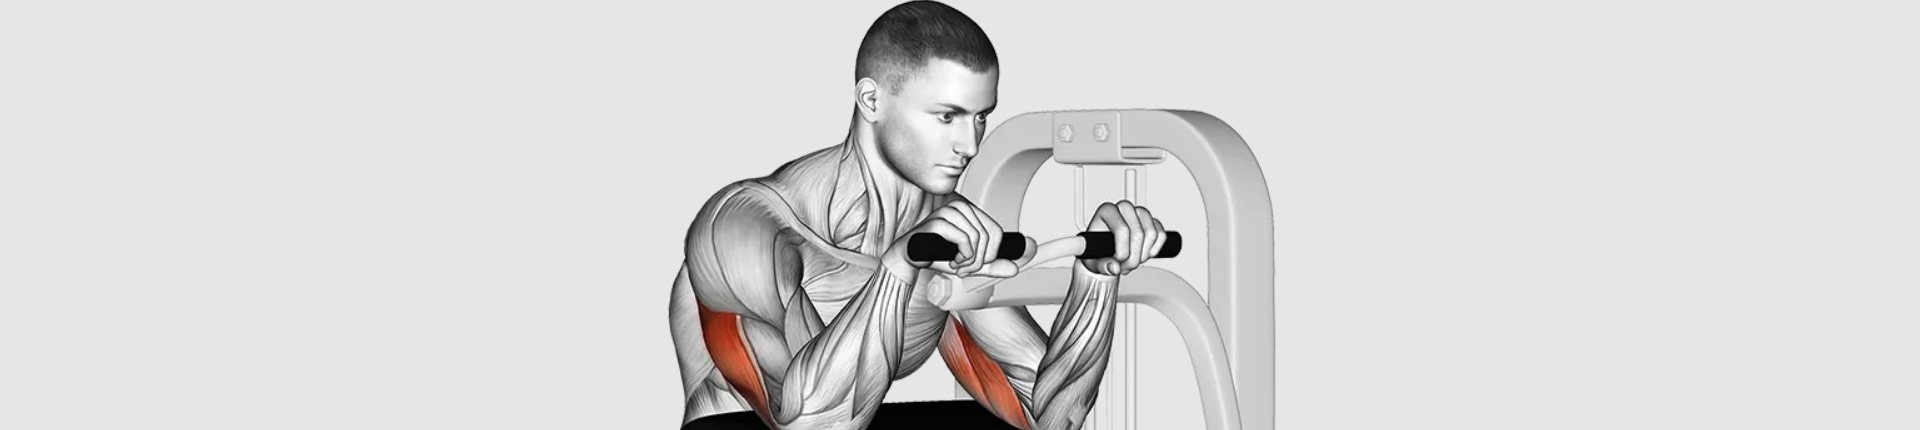 Prostowanie przedramion z rączkami maszyny siedząc - Lever Triceps Extension